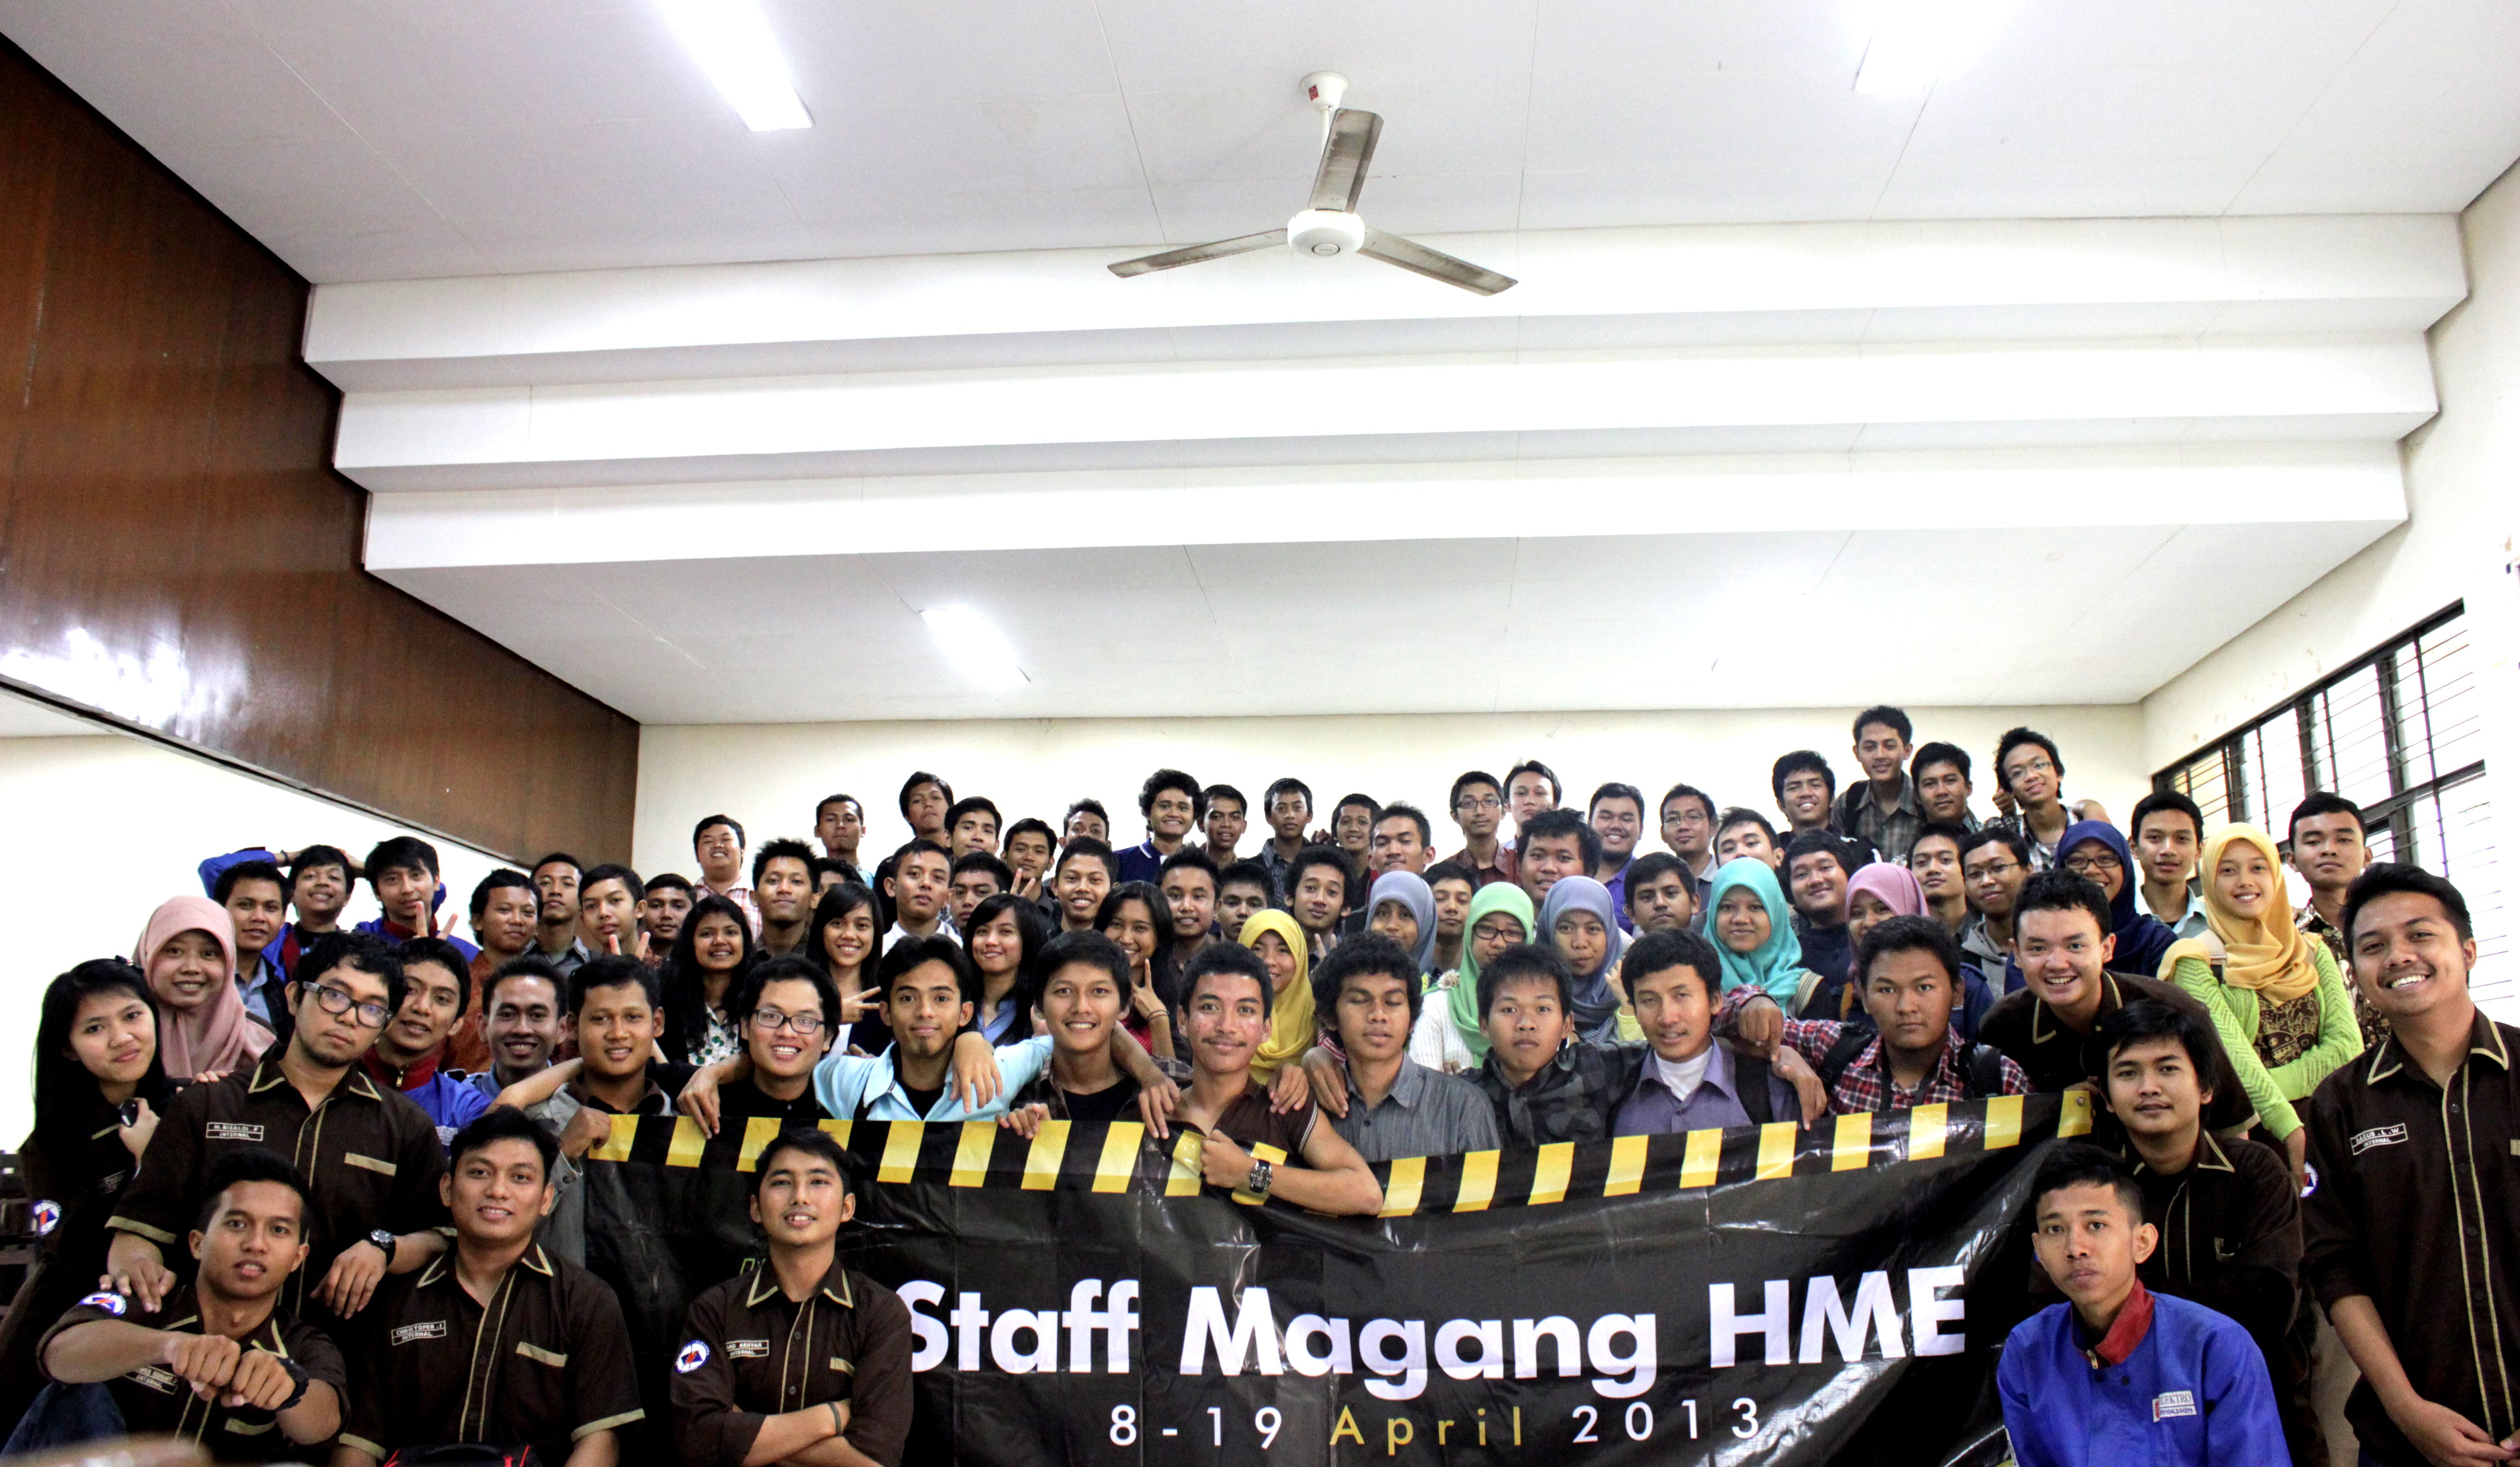 Staff Magang HME 2013